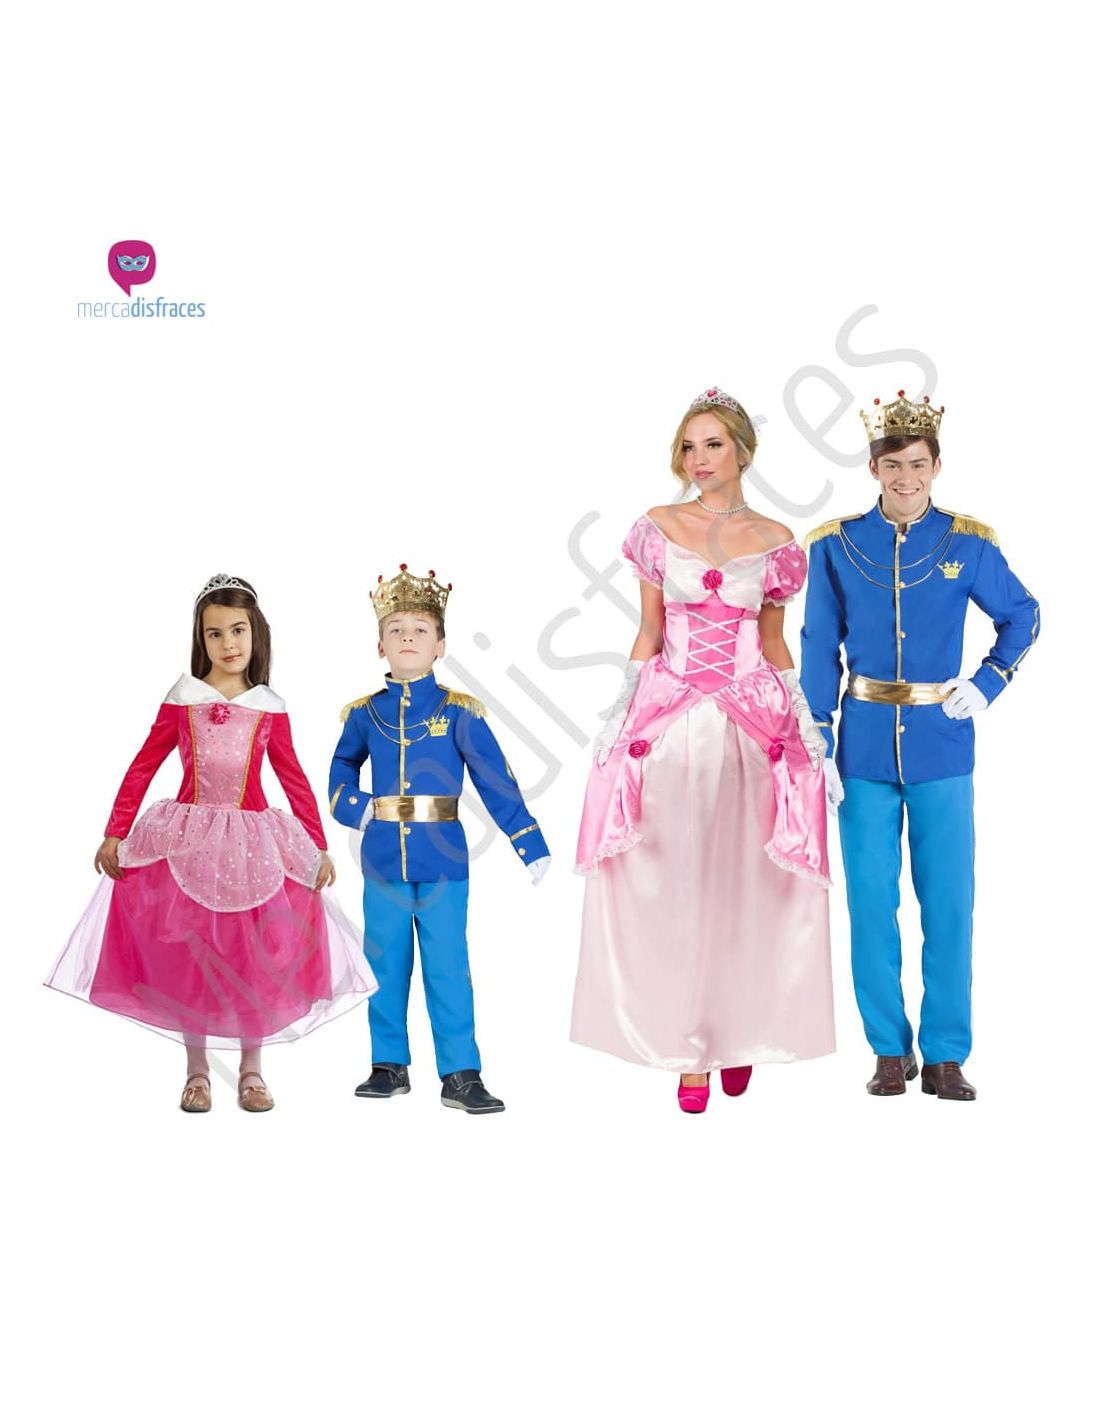 Albardilla Peregrino Vacío Disfraces para grupos de Princesas y Principes | Tienda de Disfrac...